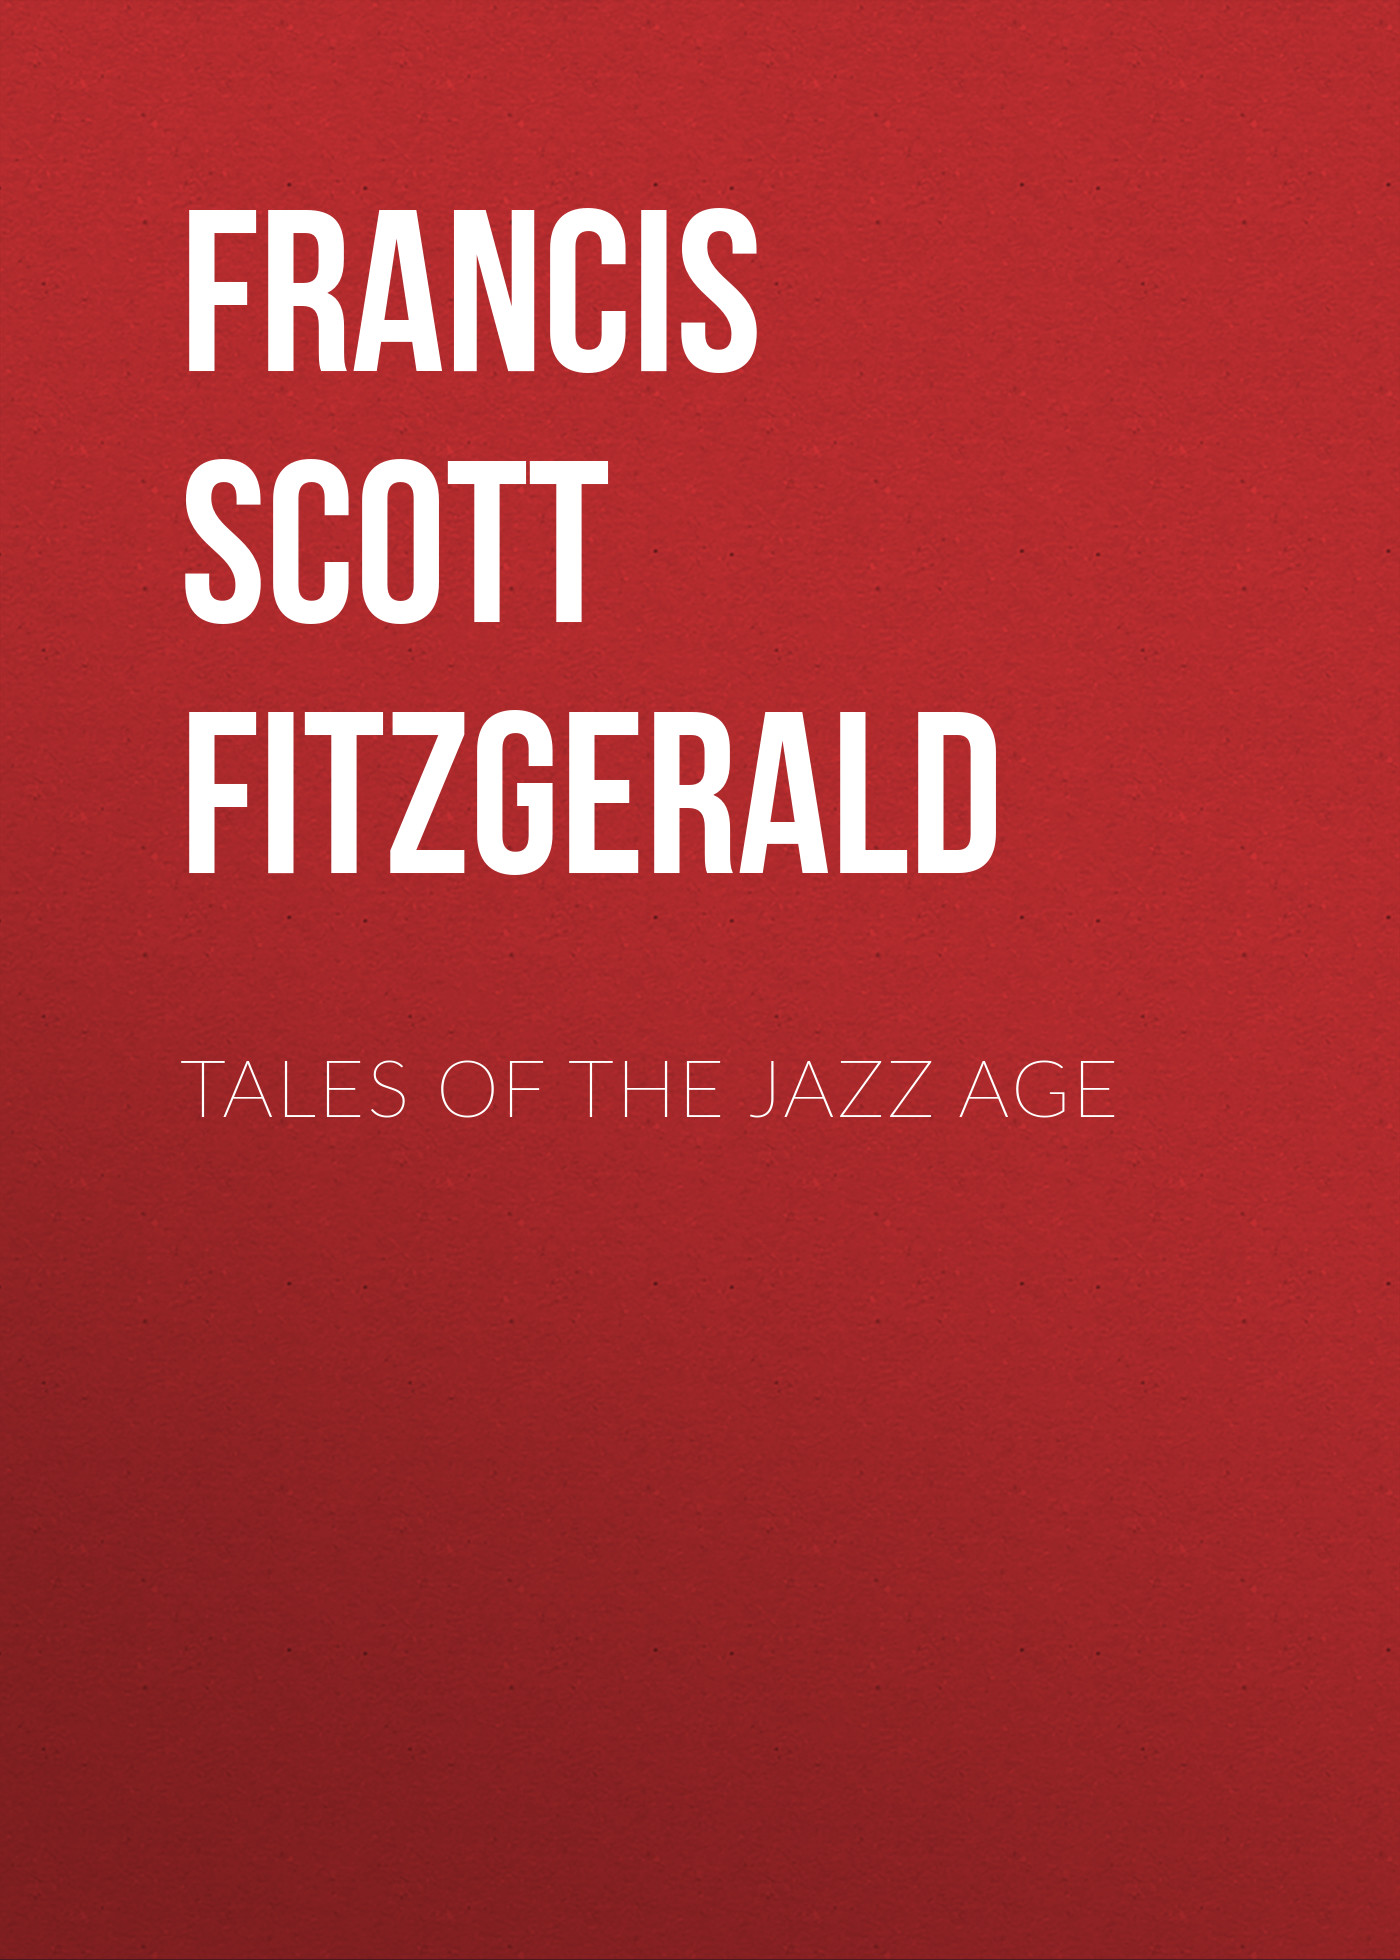 Книга Tales of the Jazz Age из серии , созданная Francis Fitzgerald, может относится к жанру Литература 20 века, Зарубежная классика. Стоимость электронной книги Tales of the Jazz Age с идентификатором 25559268 составляет 0 руб.